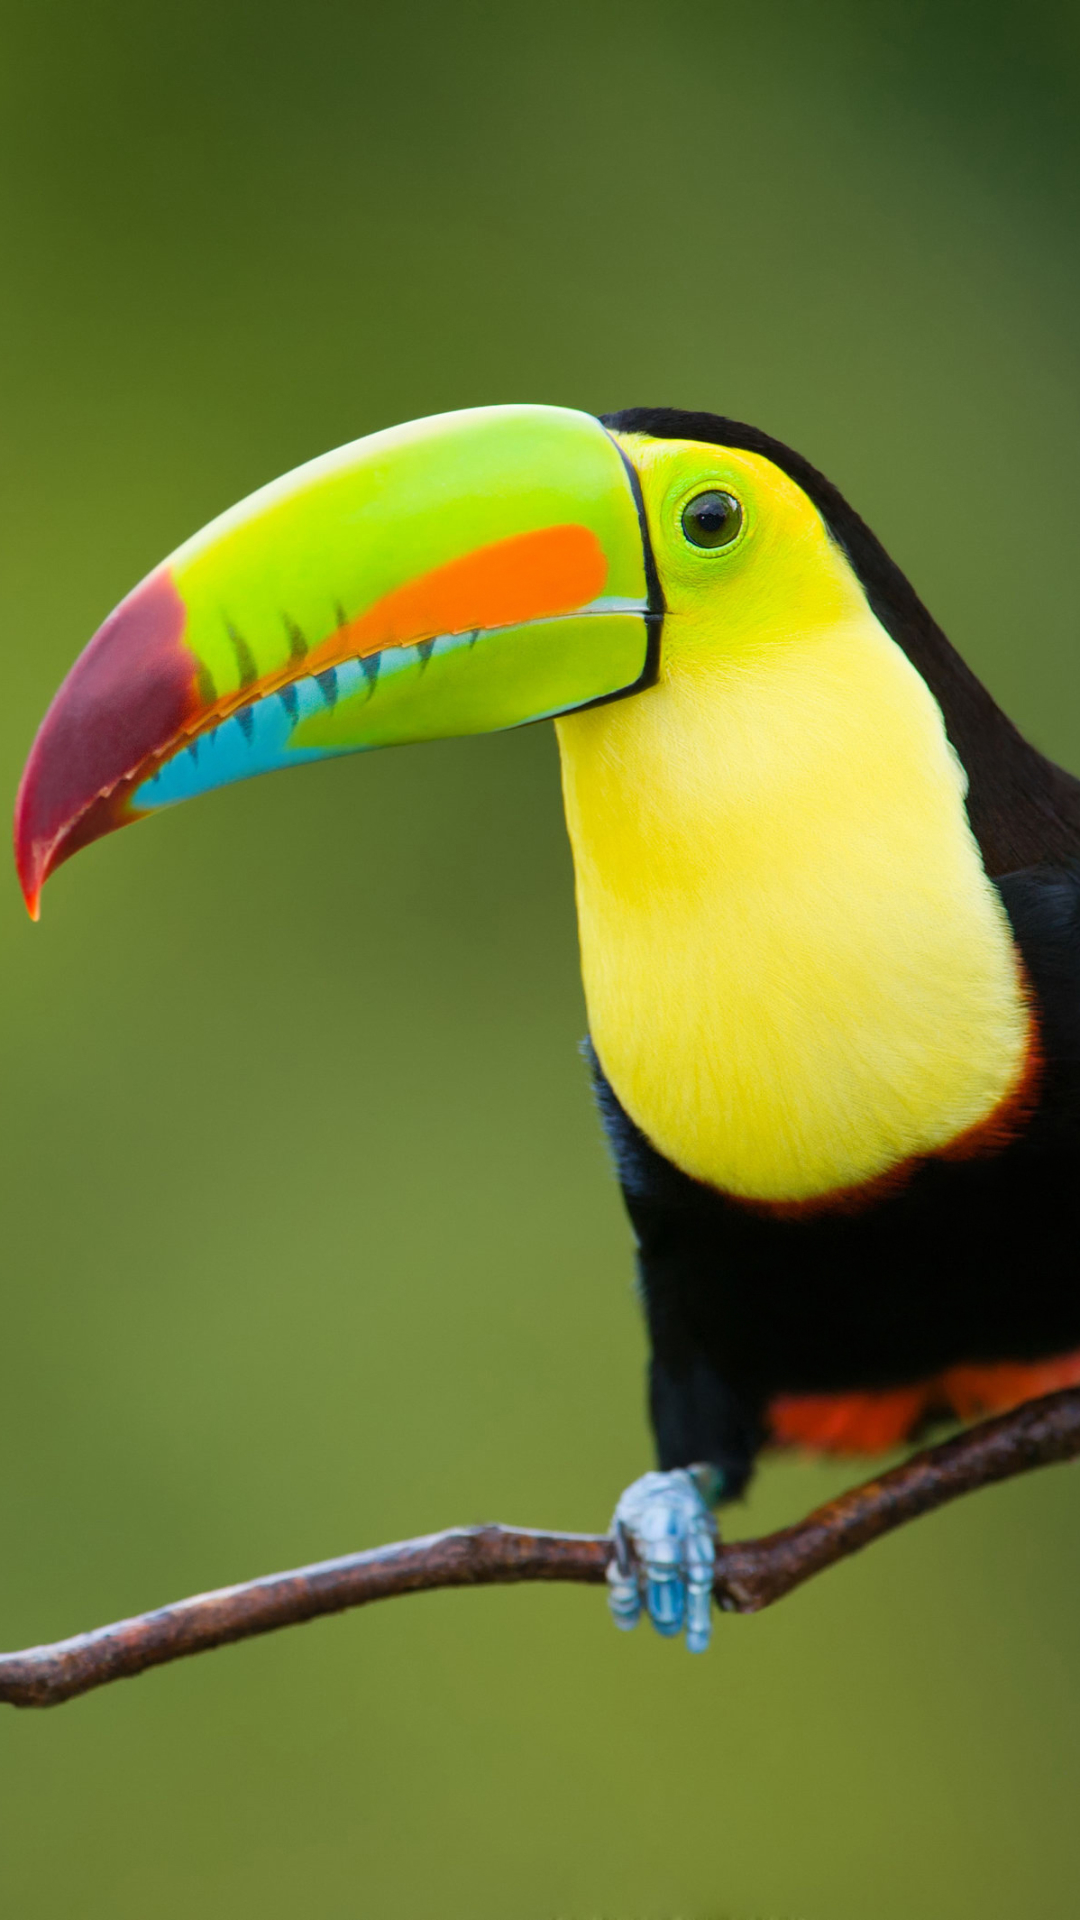 Descarga gratuita de fondo de pantalla para móvil de Animales, Pájaro, Rama, Colores, Vistoso, Tucán, Aves, Ave.